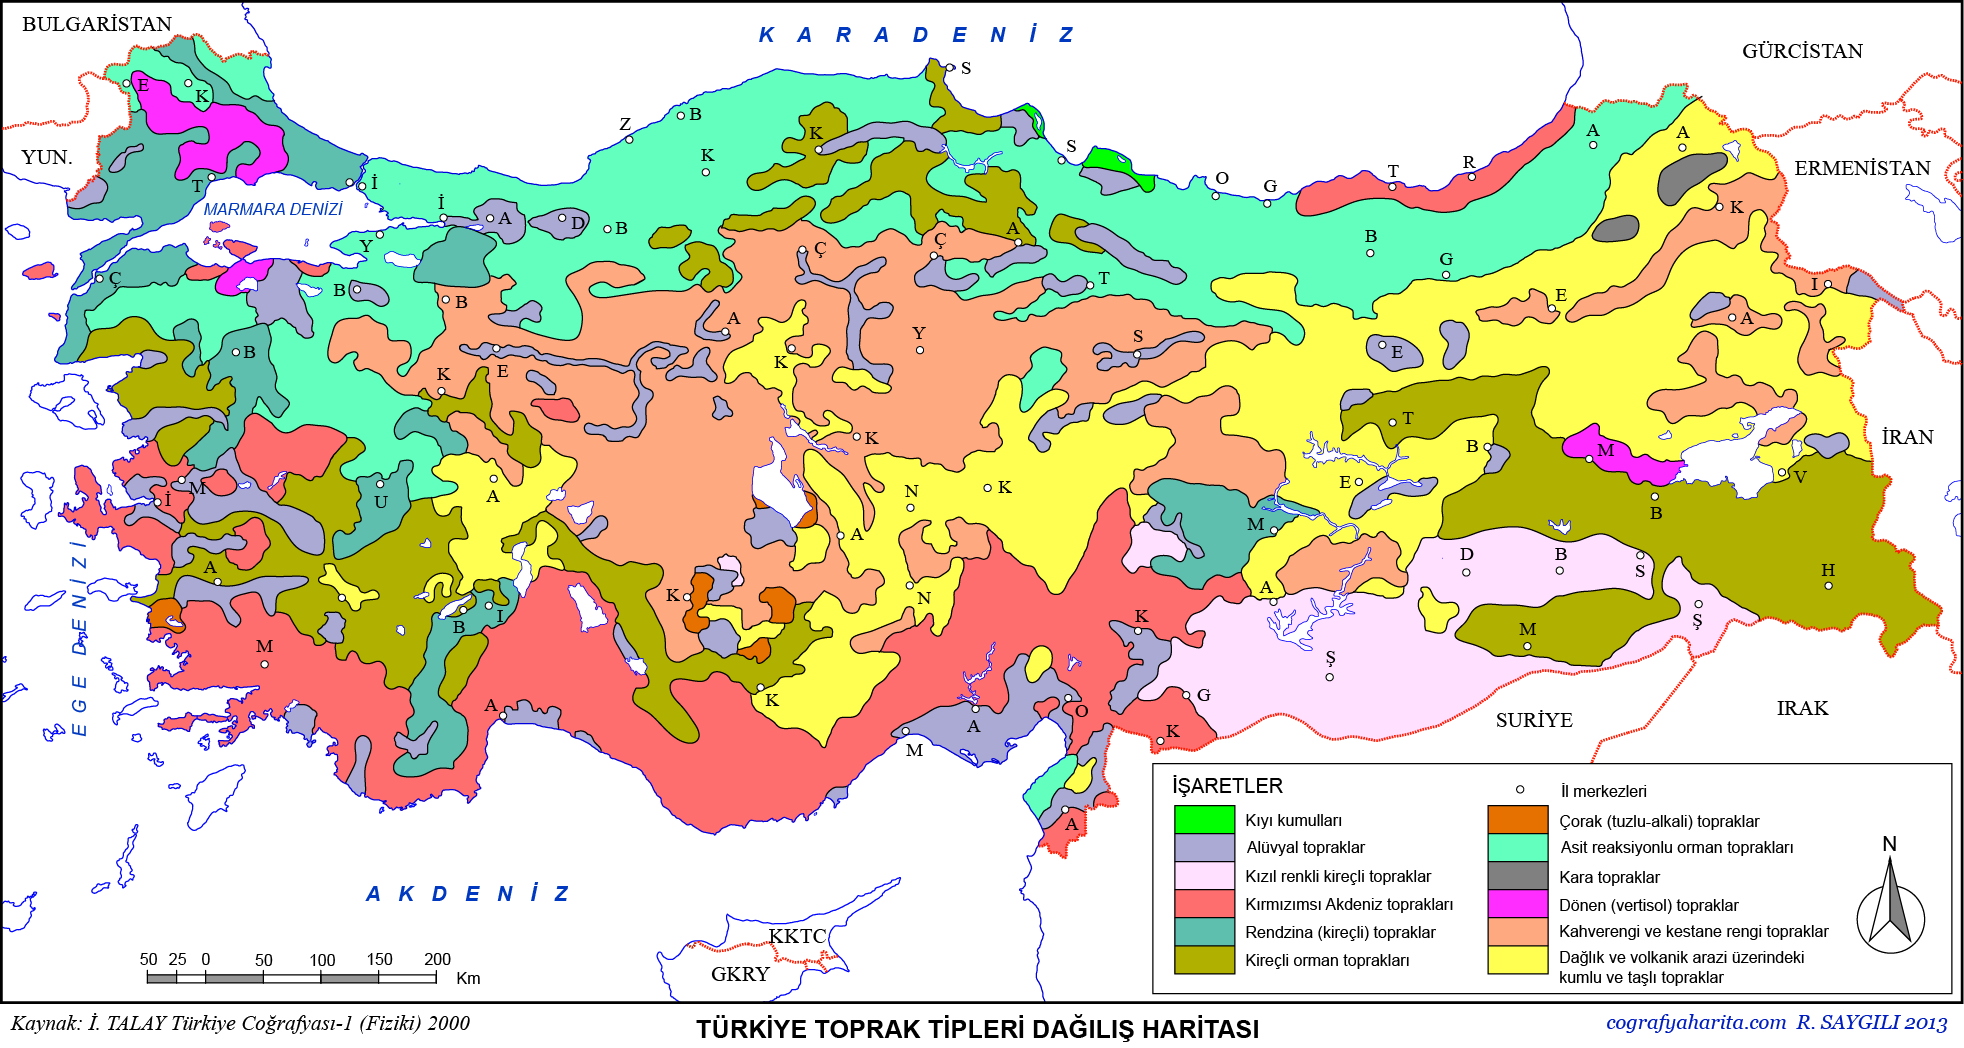 Türkiye Toprak Haritası: Türkiye'deki Toprak Tipleri Dağılışı Ve